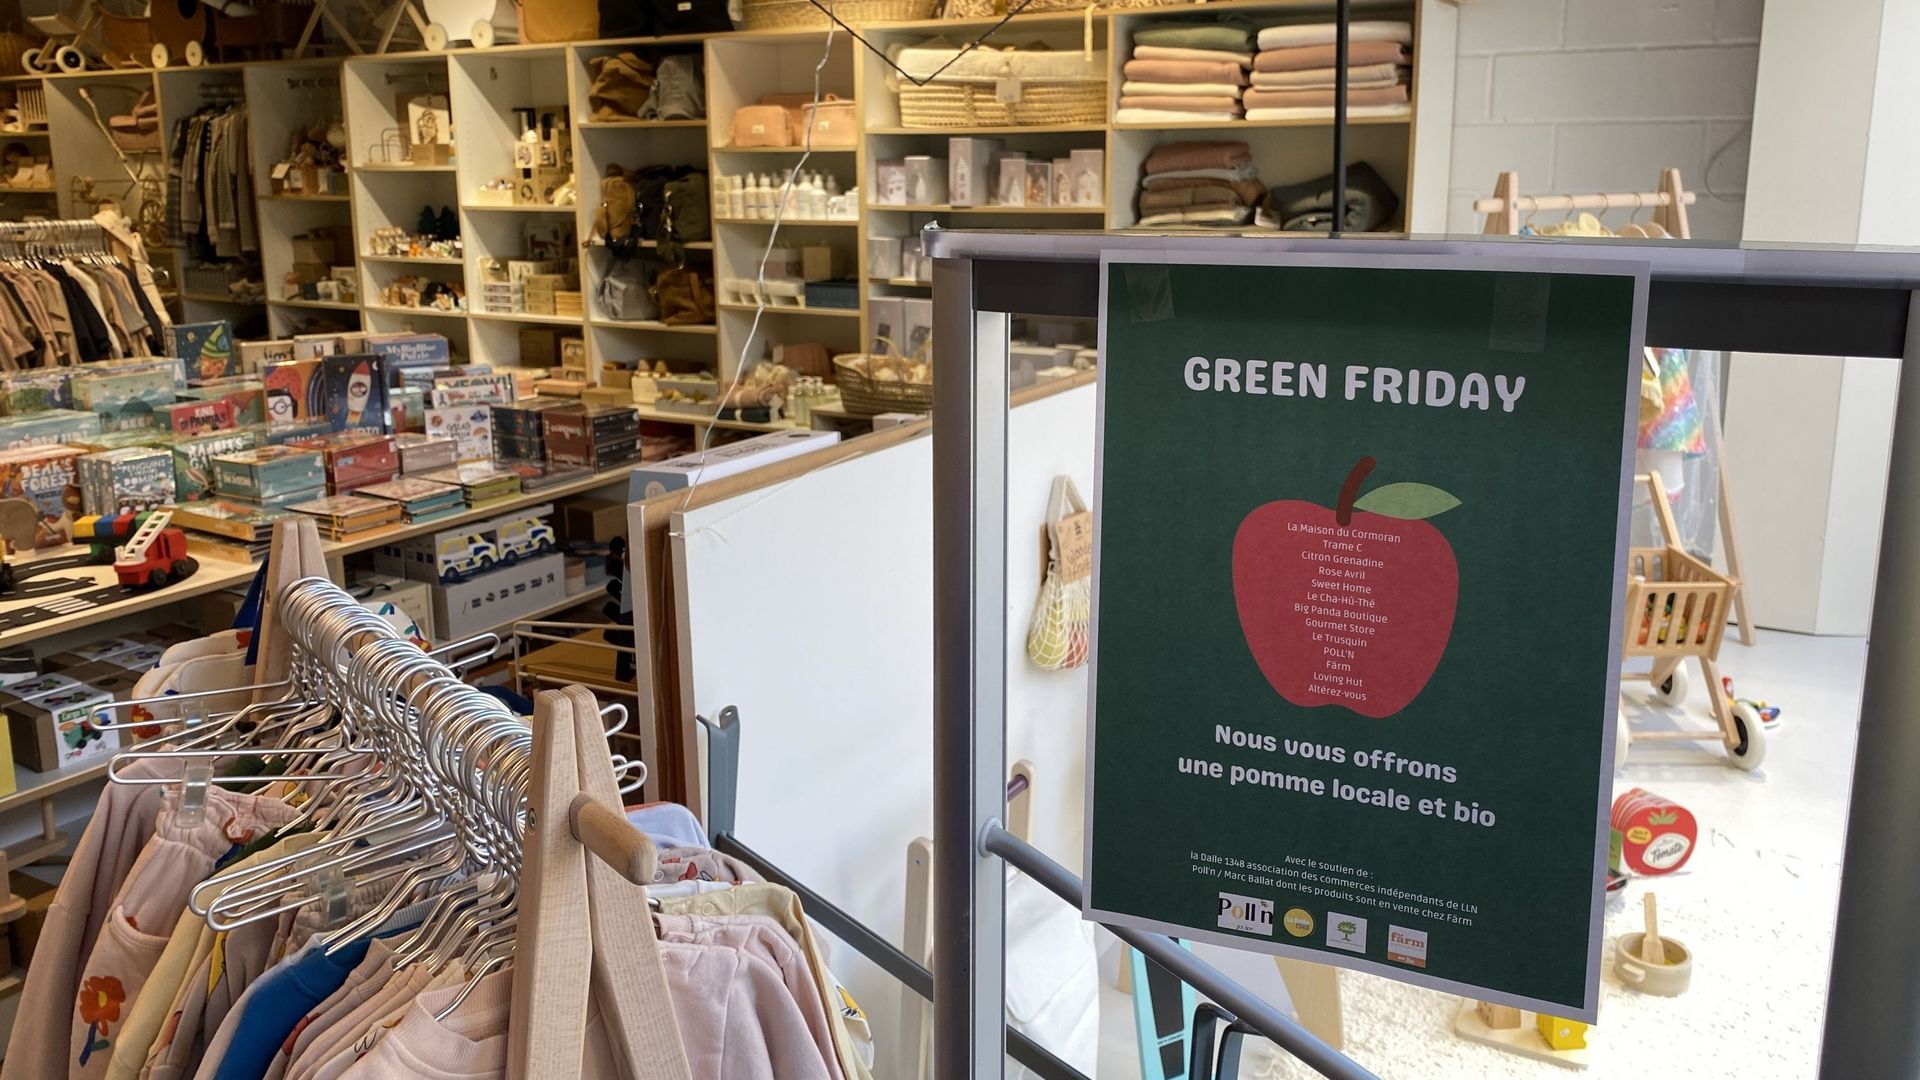 Treize commerçants ont choisi d’offrir des pommes ce vendredi, plutôt que des réductions.